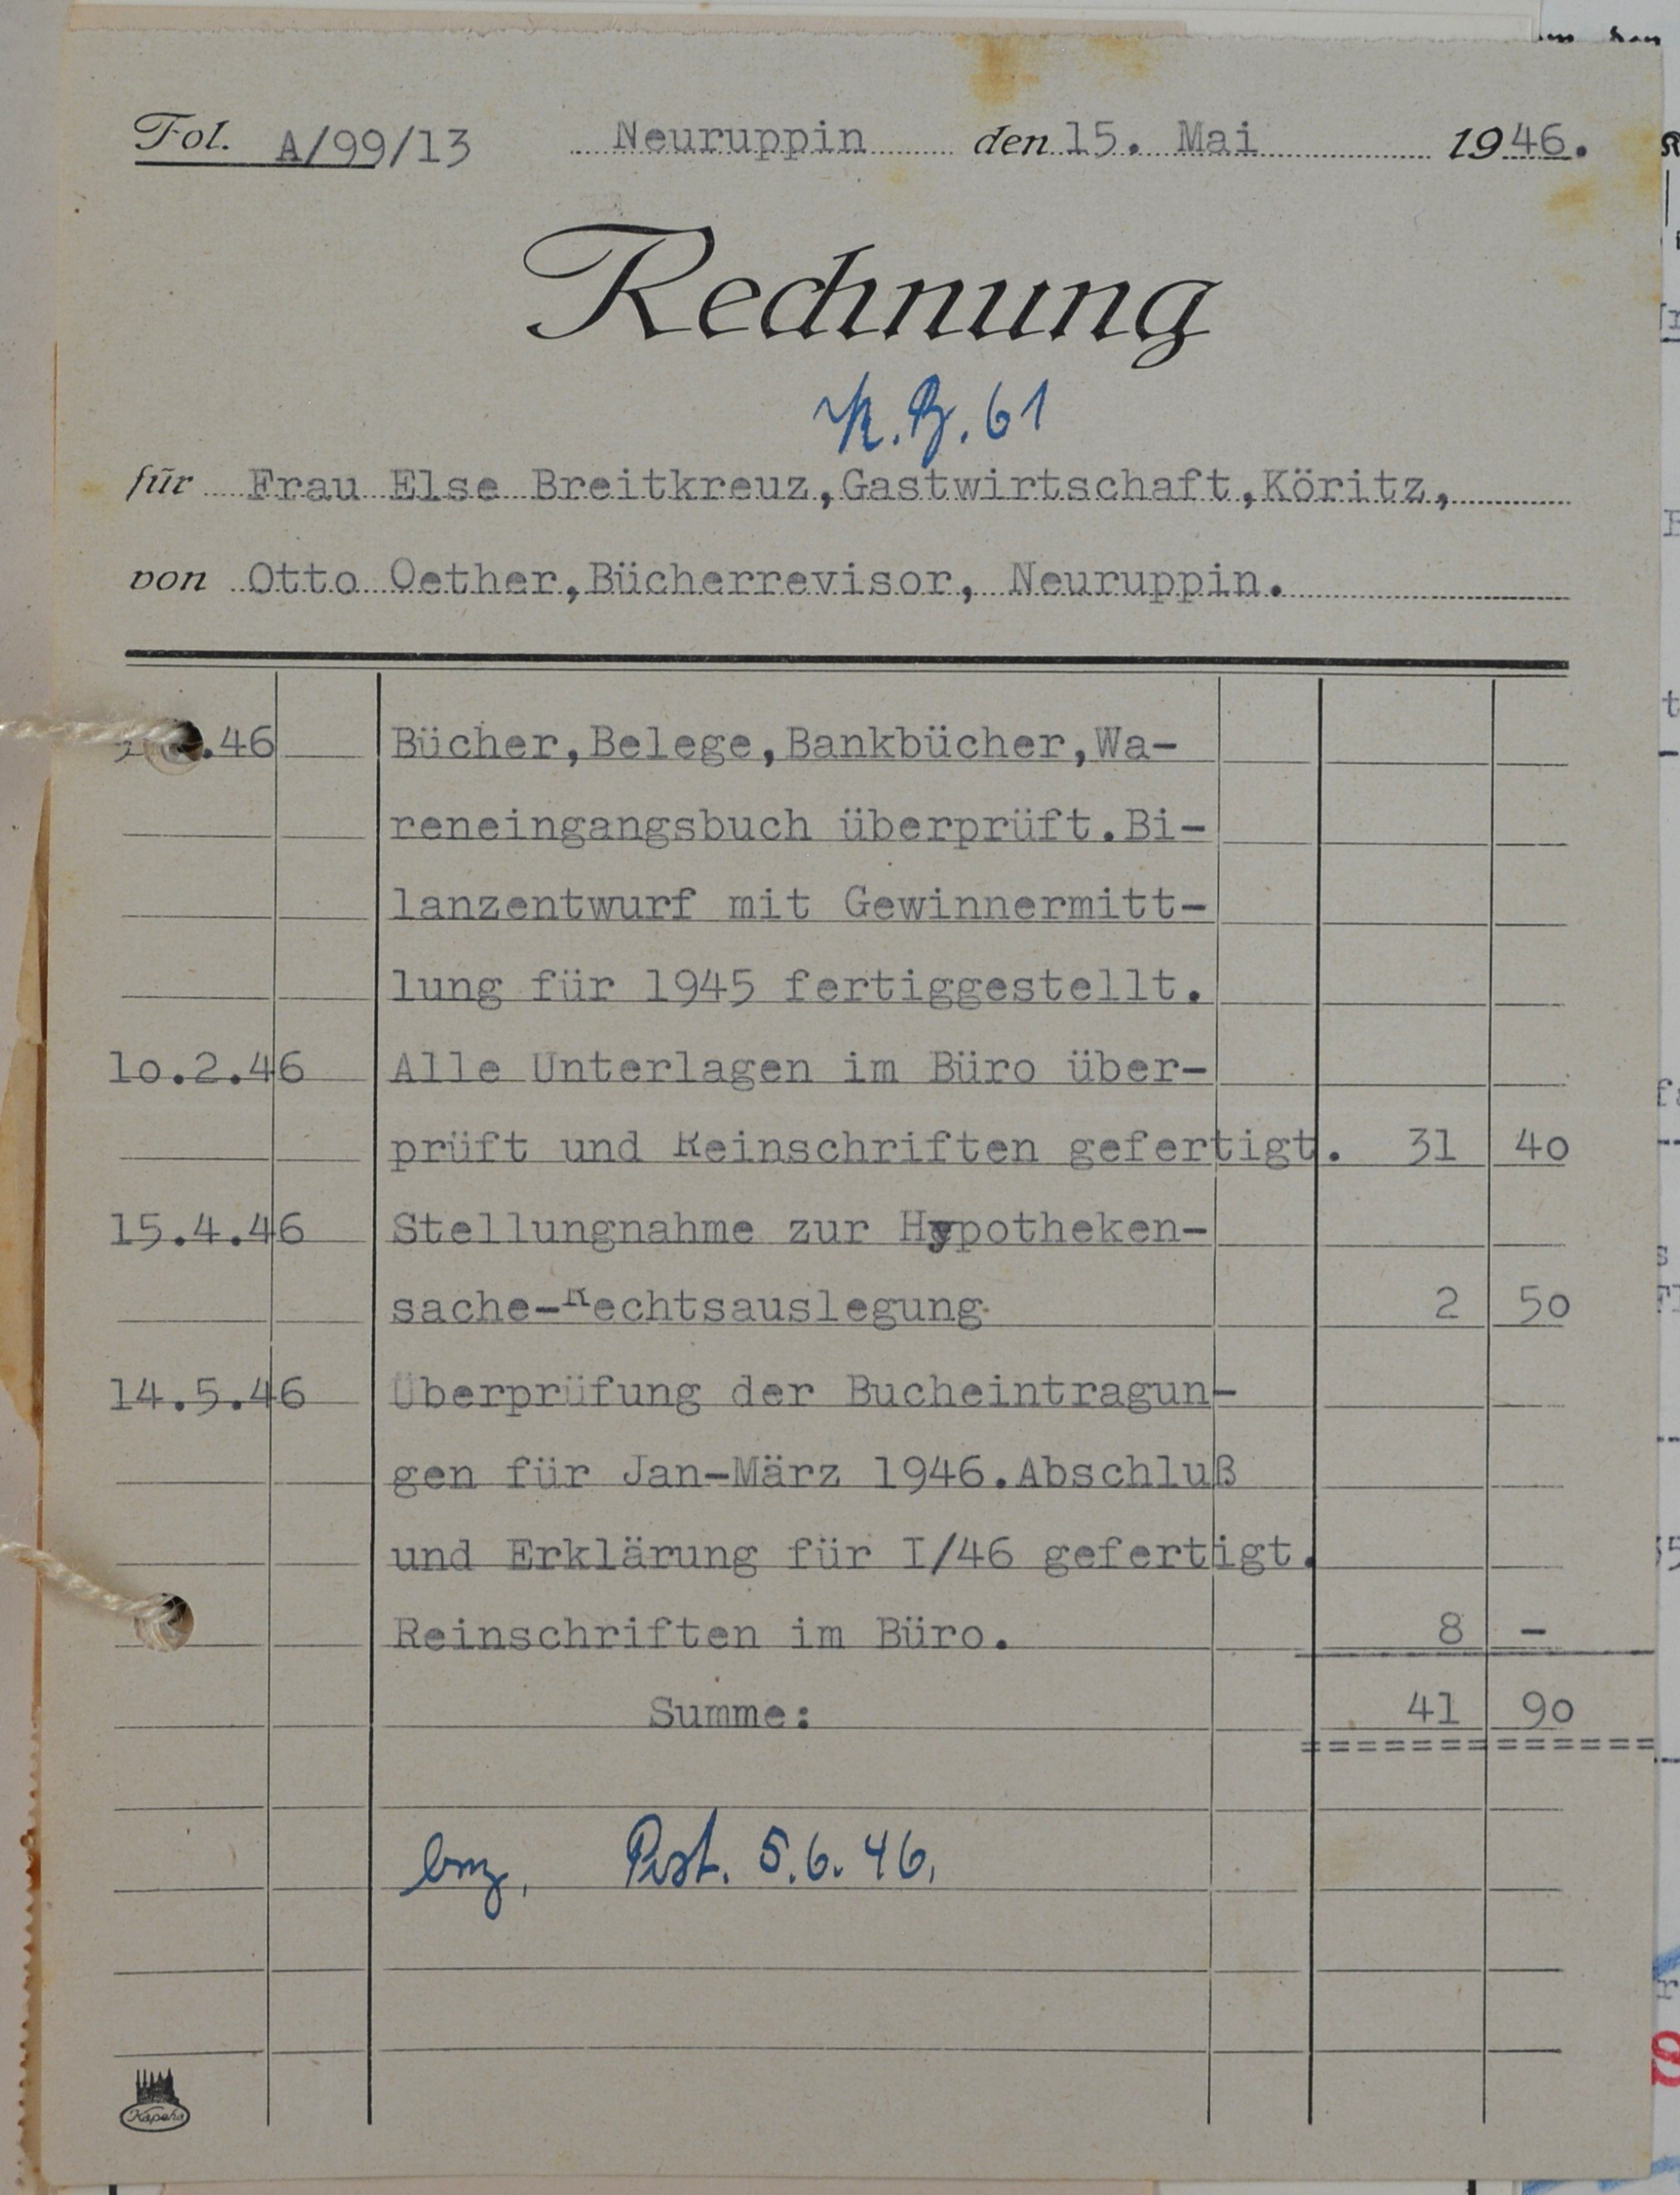 Rechnung von dem Bücherrevisor Otto Oether aus Neuruppin für Else Breitkreuz (DDR Geschichtsmuseum im Dokumentationszentrum Perleberg CC BY-SA)